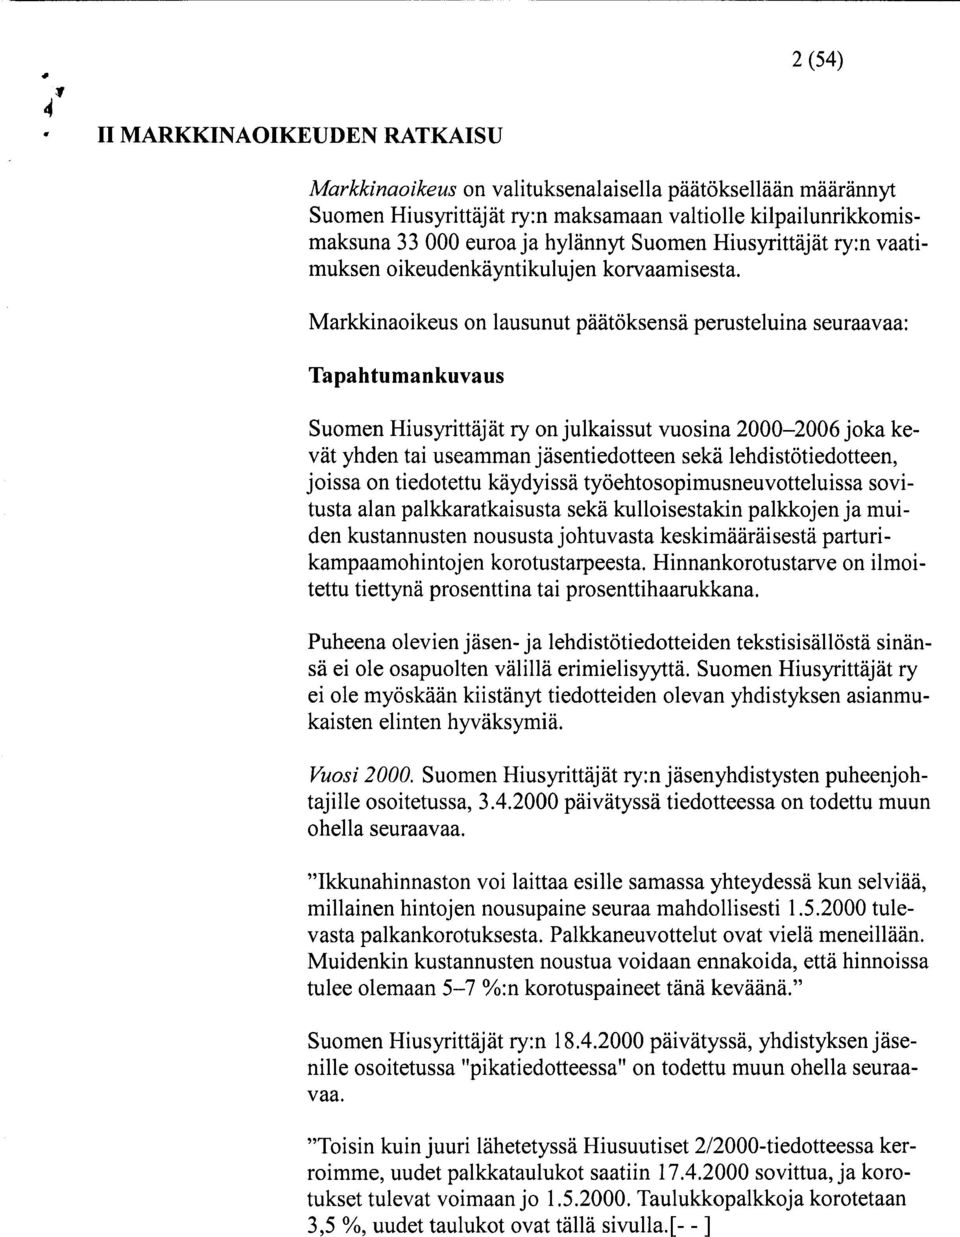 Markkinaoikeus on lausunut päätöksensä perusteluina seuraavaa: Tapahtumankuvaus Suomen Hiusyrittäjät ry on julkaissut vuosina 2000-2006 joka kevät yhden tai useamman jäsentiedotteen sekä